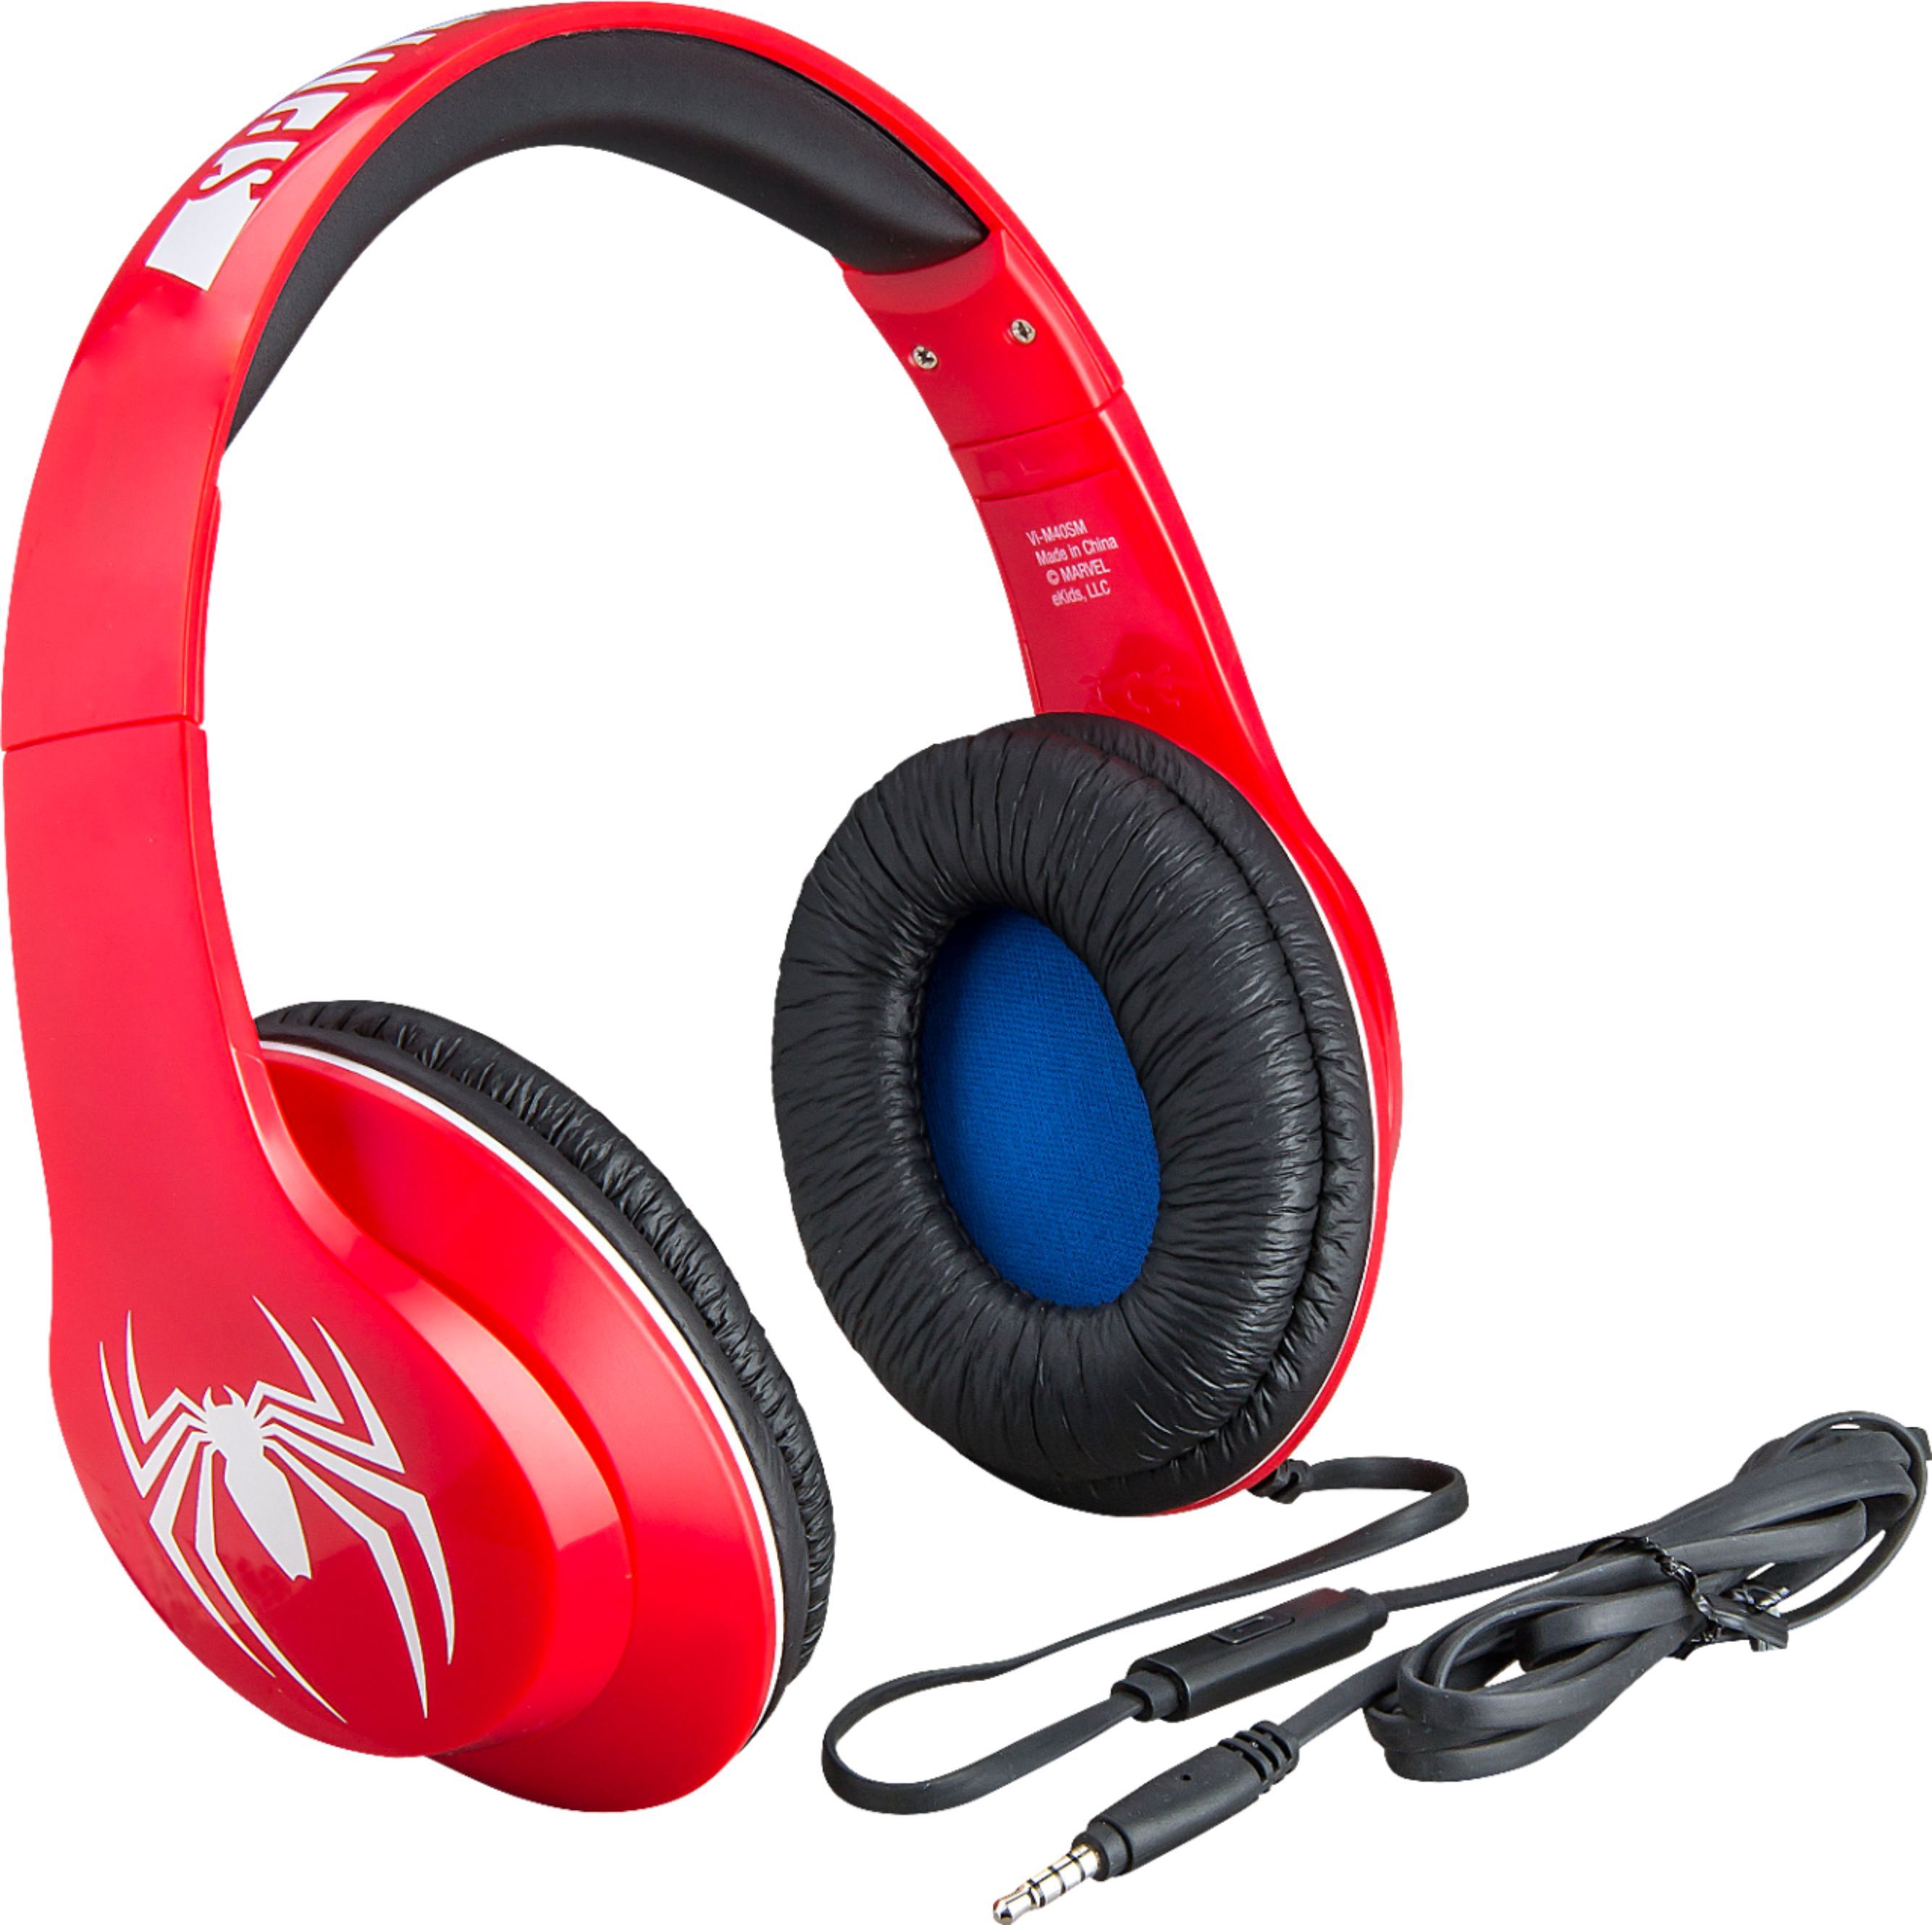 eKids Spiderman Co Branded Headphone red VI-M40SM - Best Buy | Best Buy U.S.